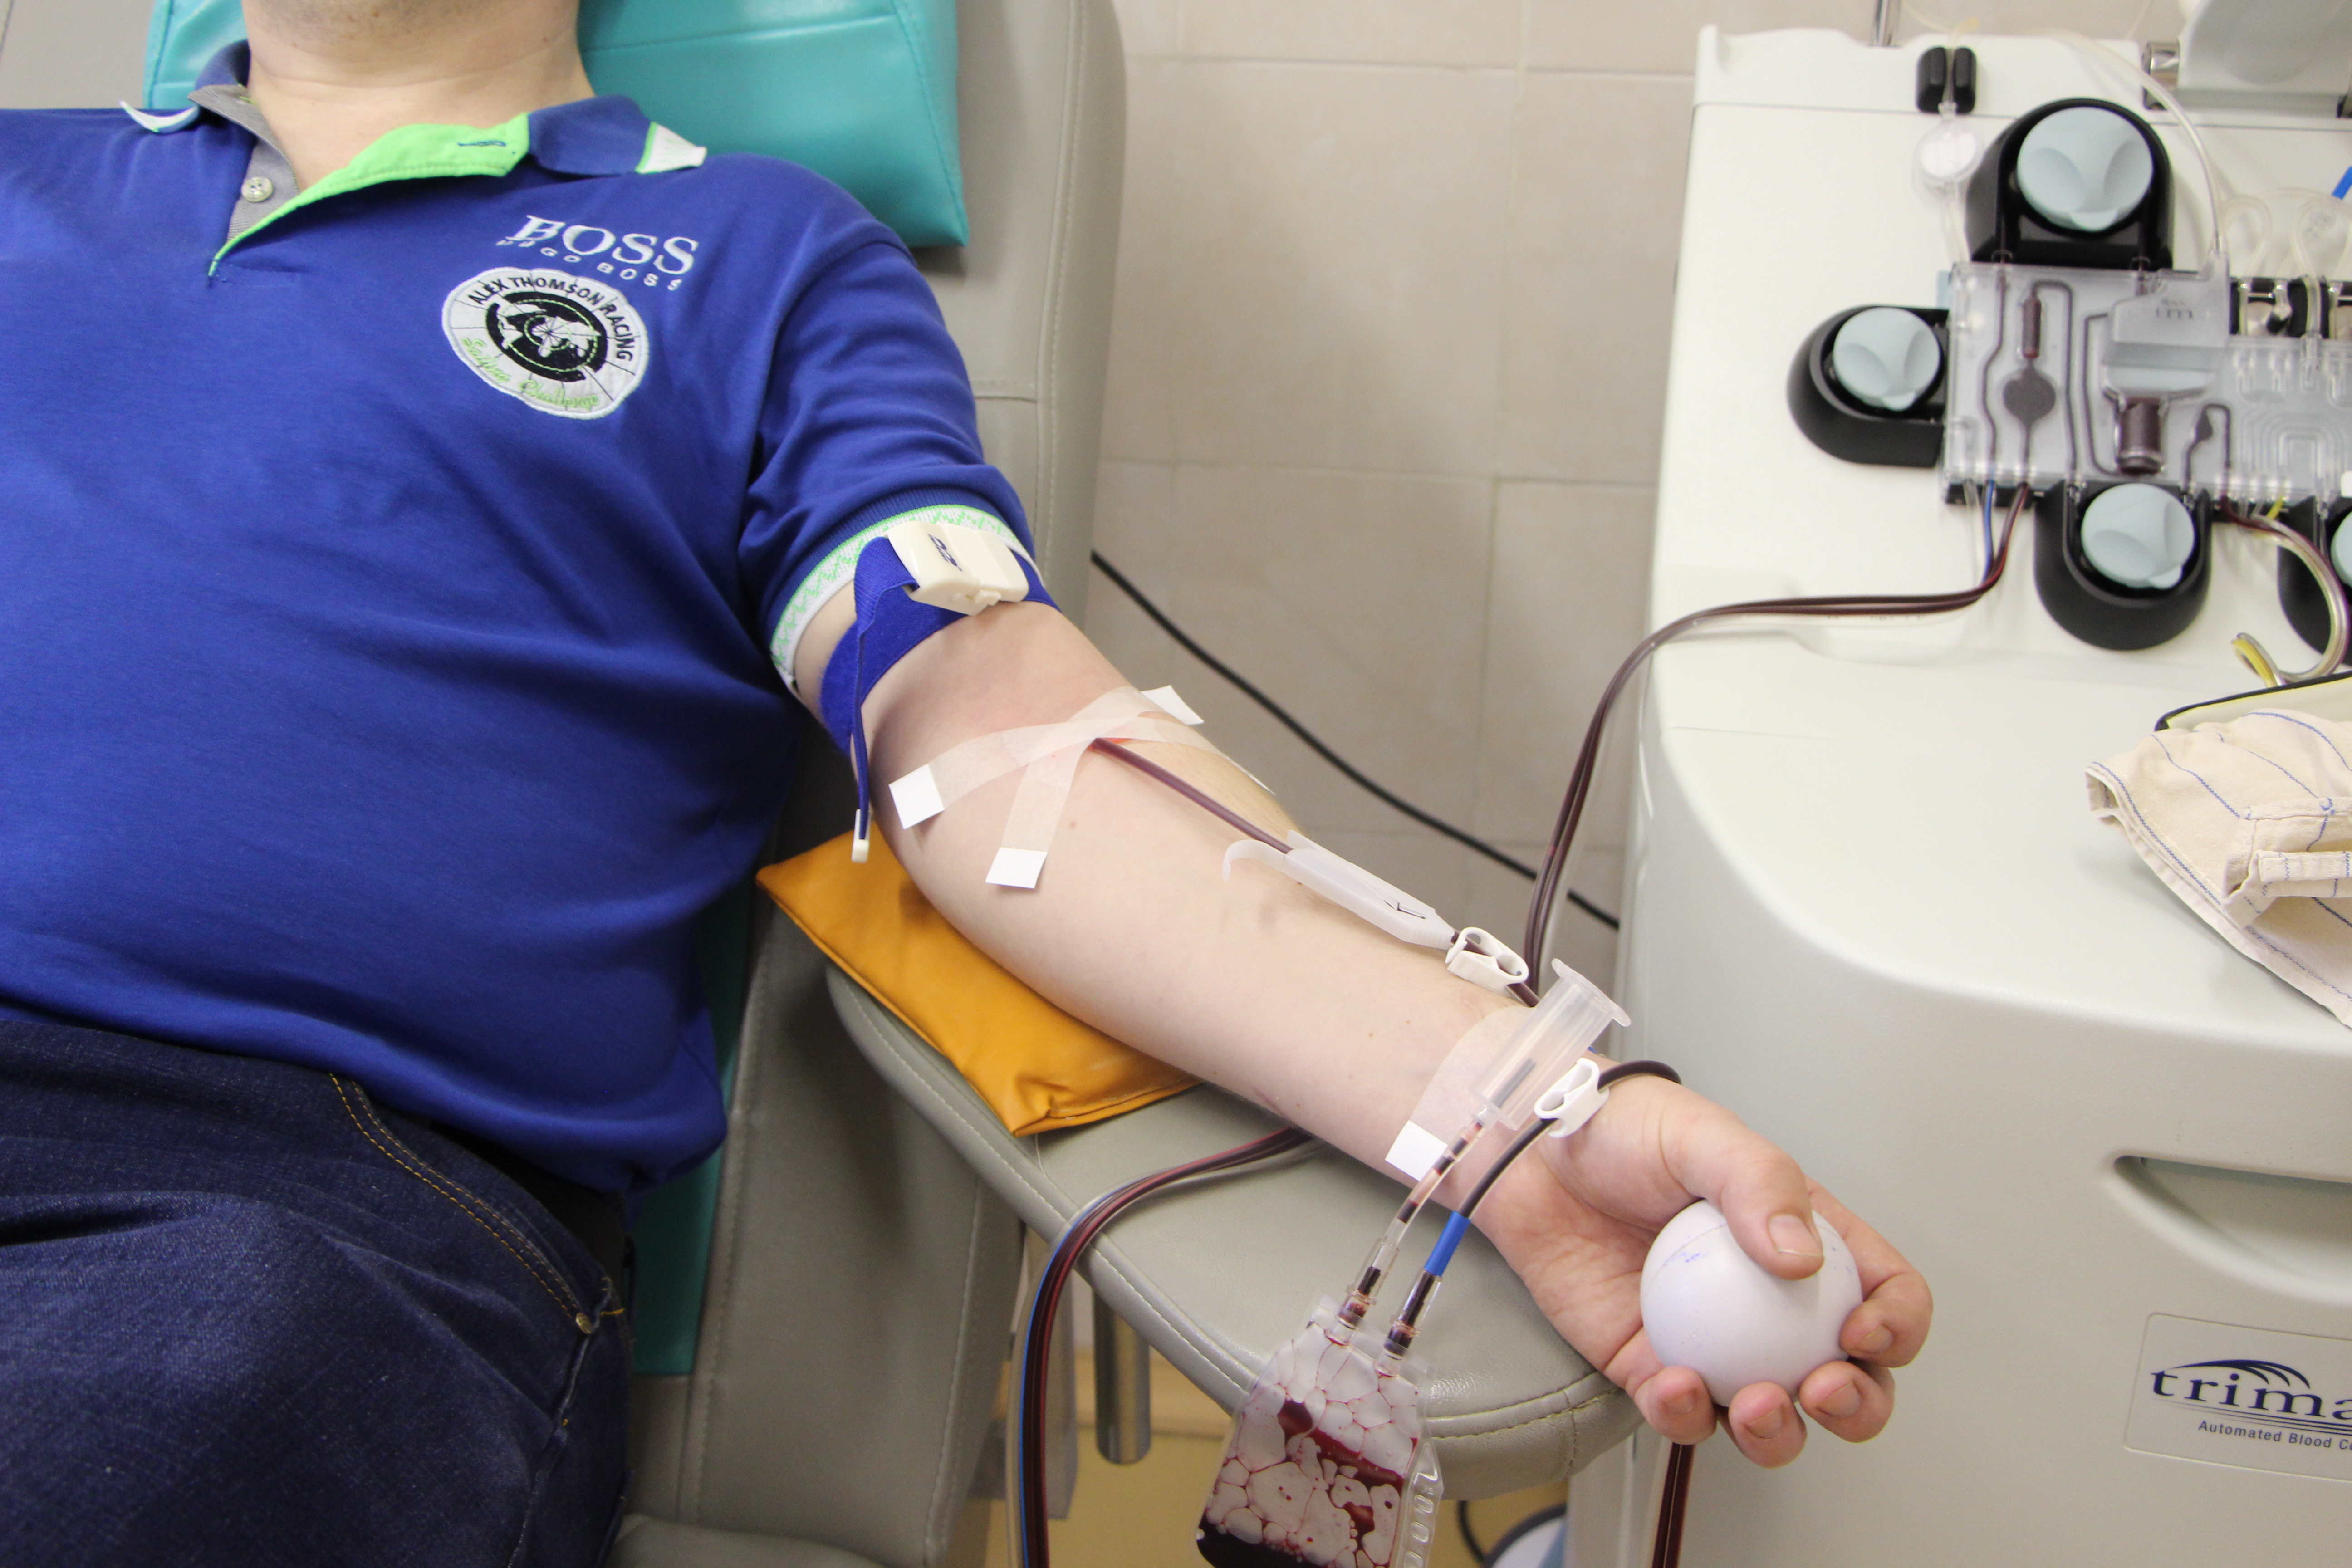 11.06.20 Ежегодно порядка трех тысяч литров цельной крови заготавливается в ОДКБ.jpg